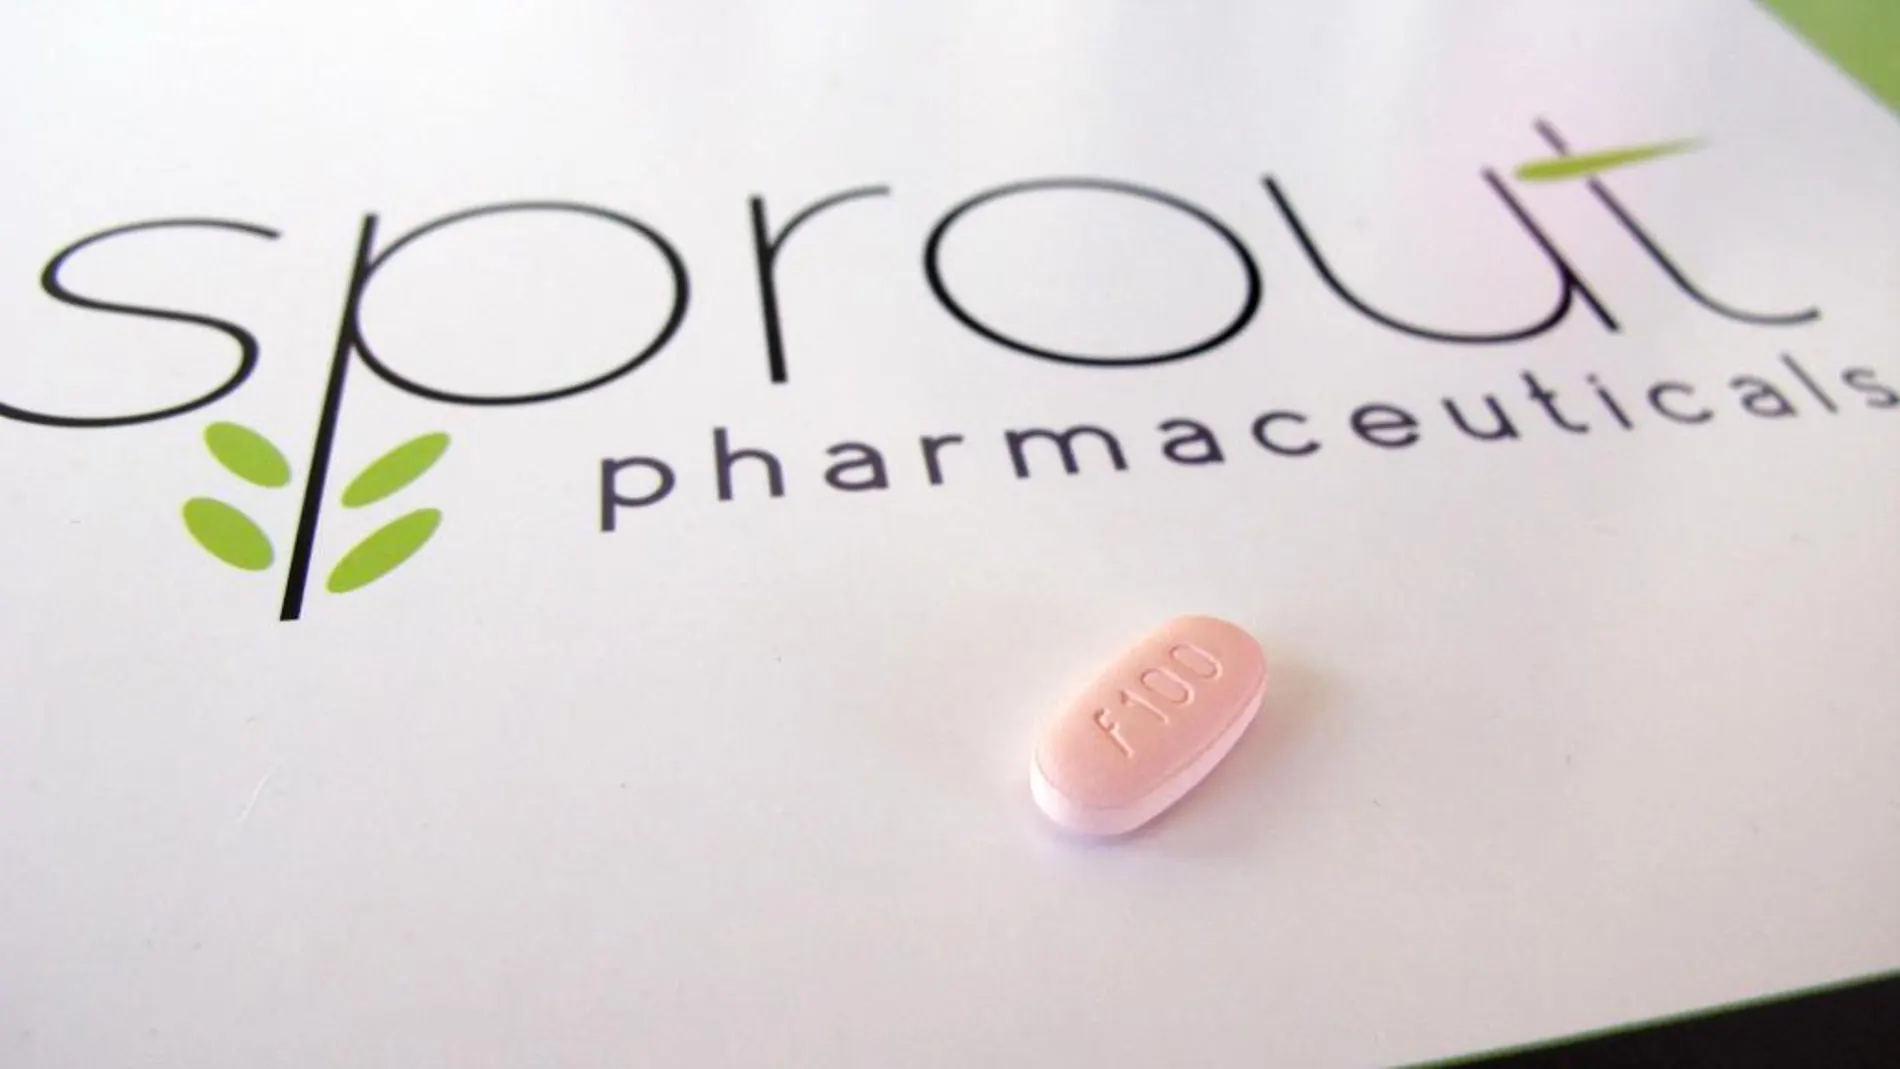 Éstas pequeñas píldoras de color rosa podrían estar disponibles en las farmacias estadounidenses a partir del 17 de octubre bajo el nombre comercial de Addyi